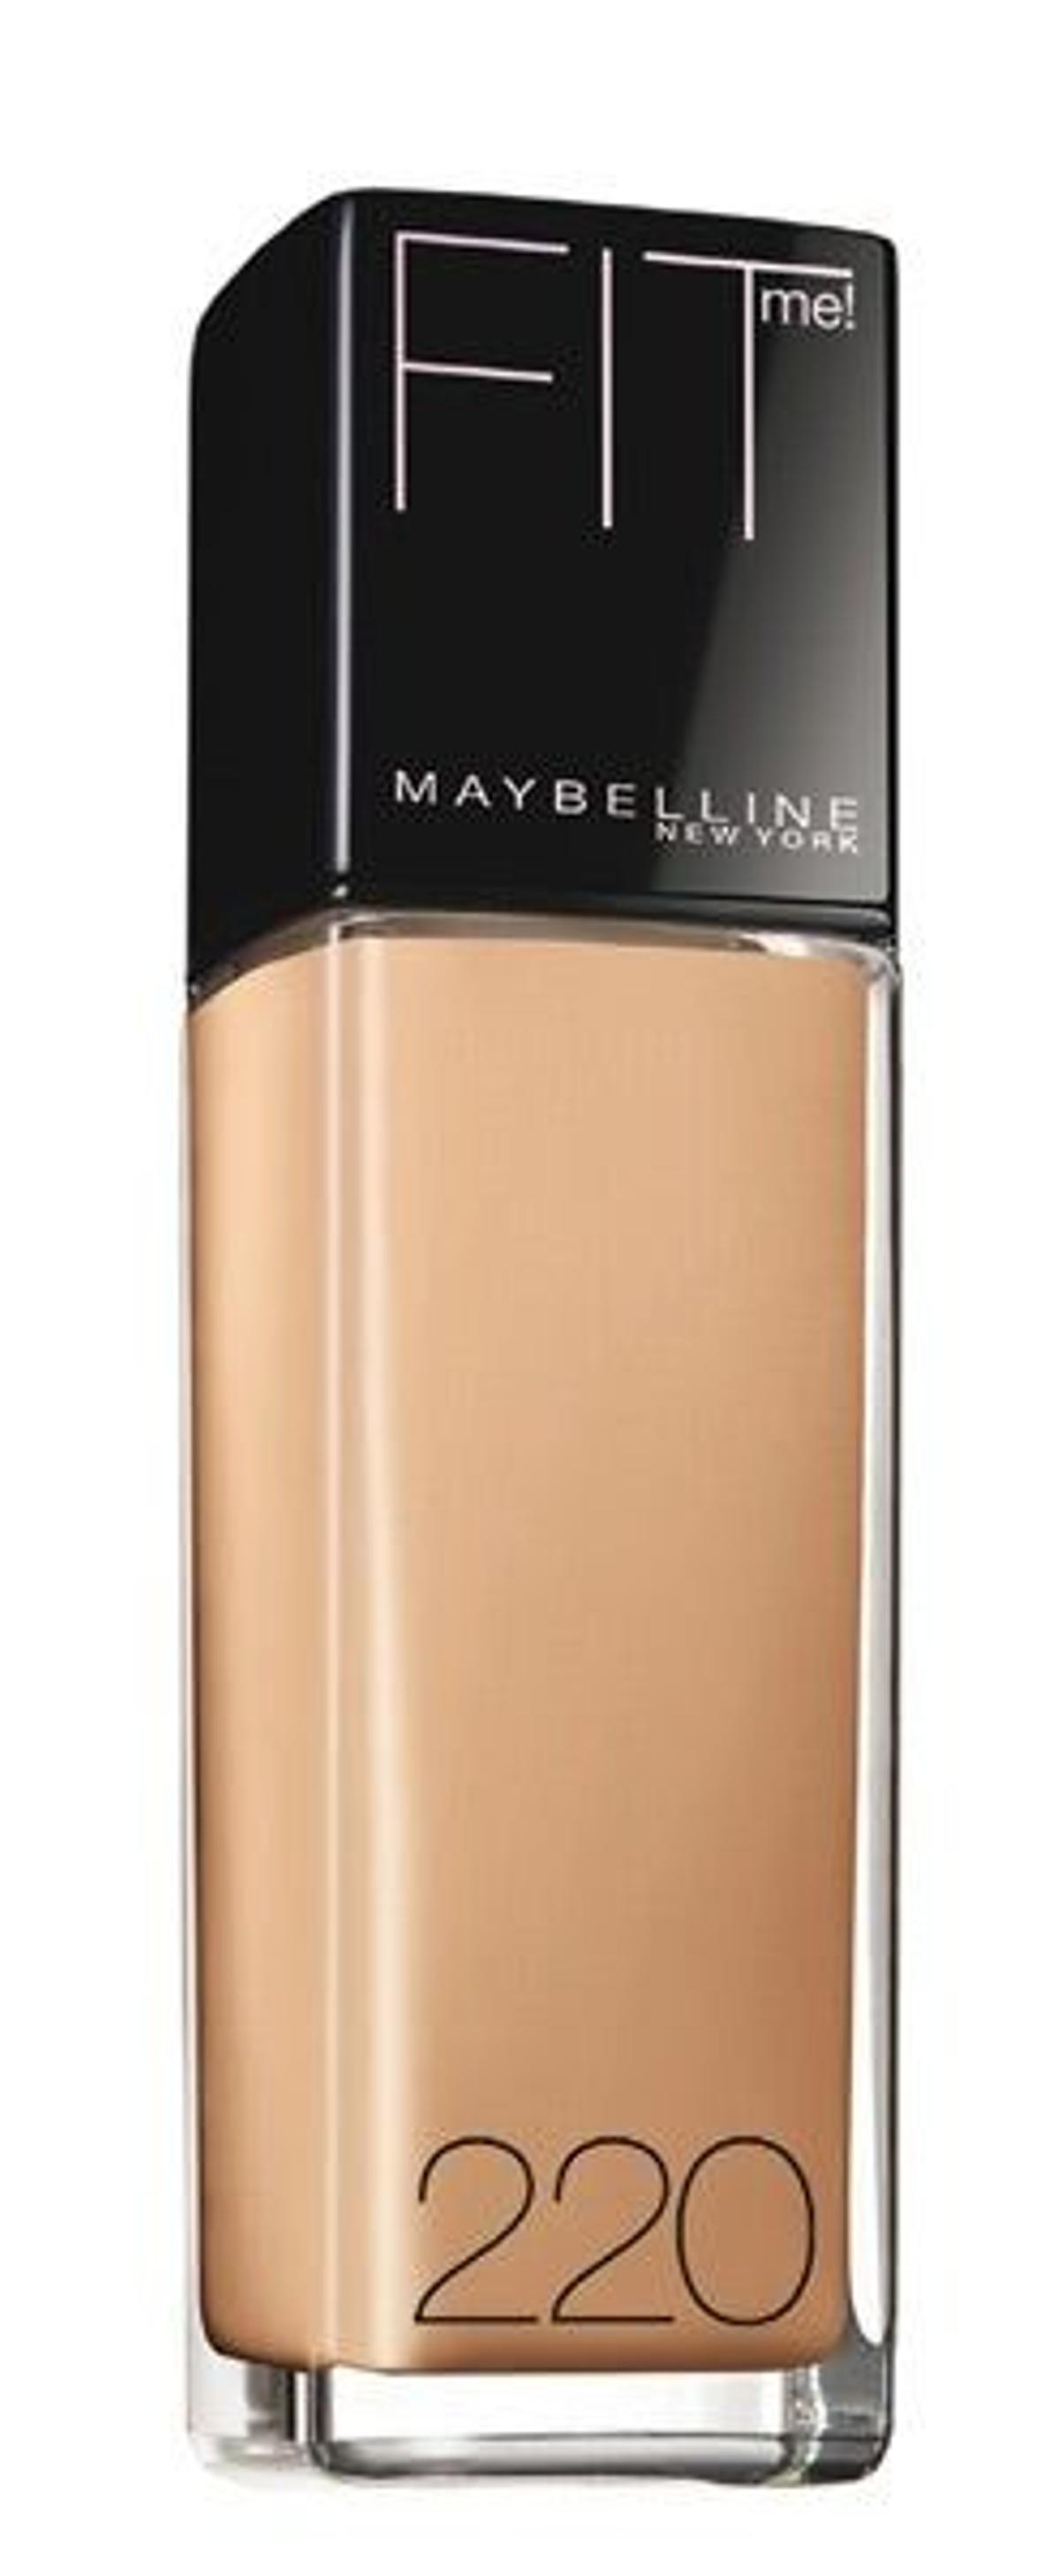 FITME, el nuevo maquillaje de Maybelline New York - Stilo